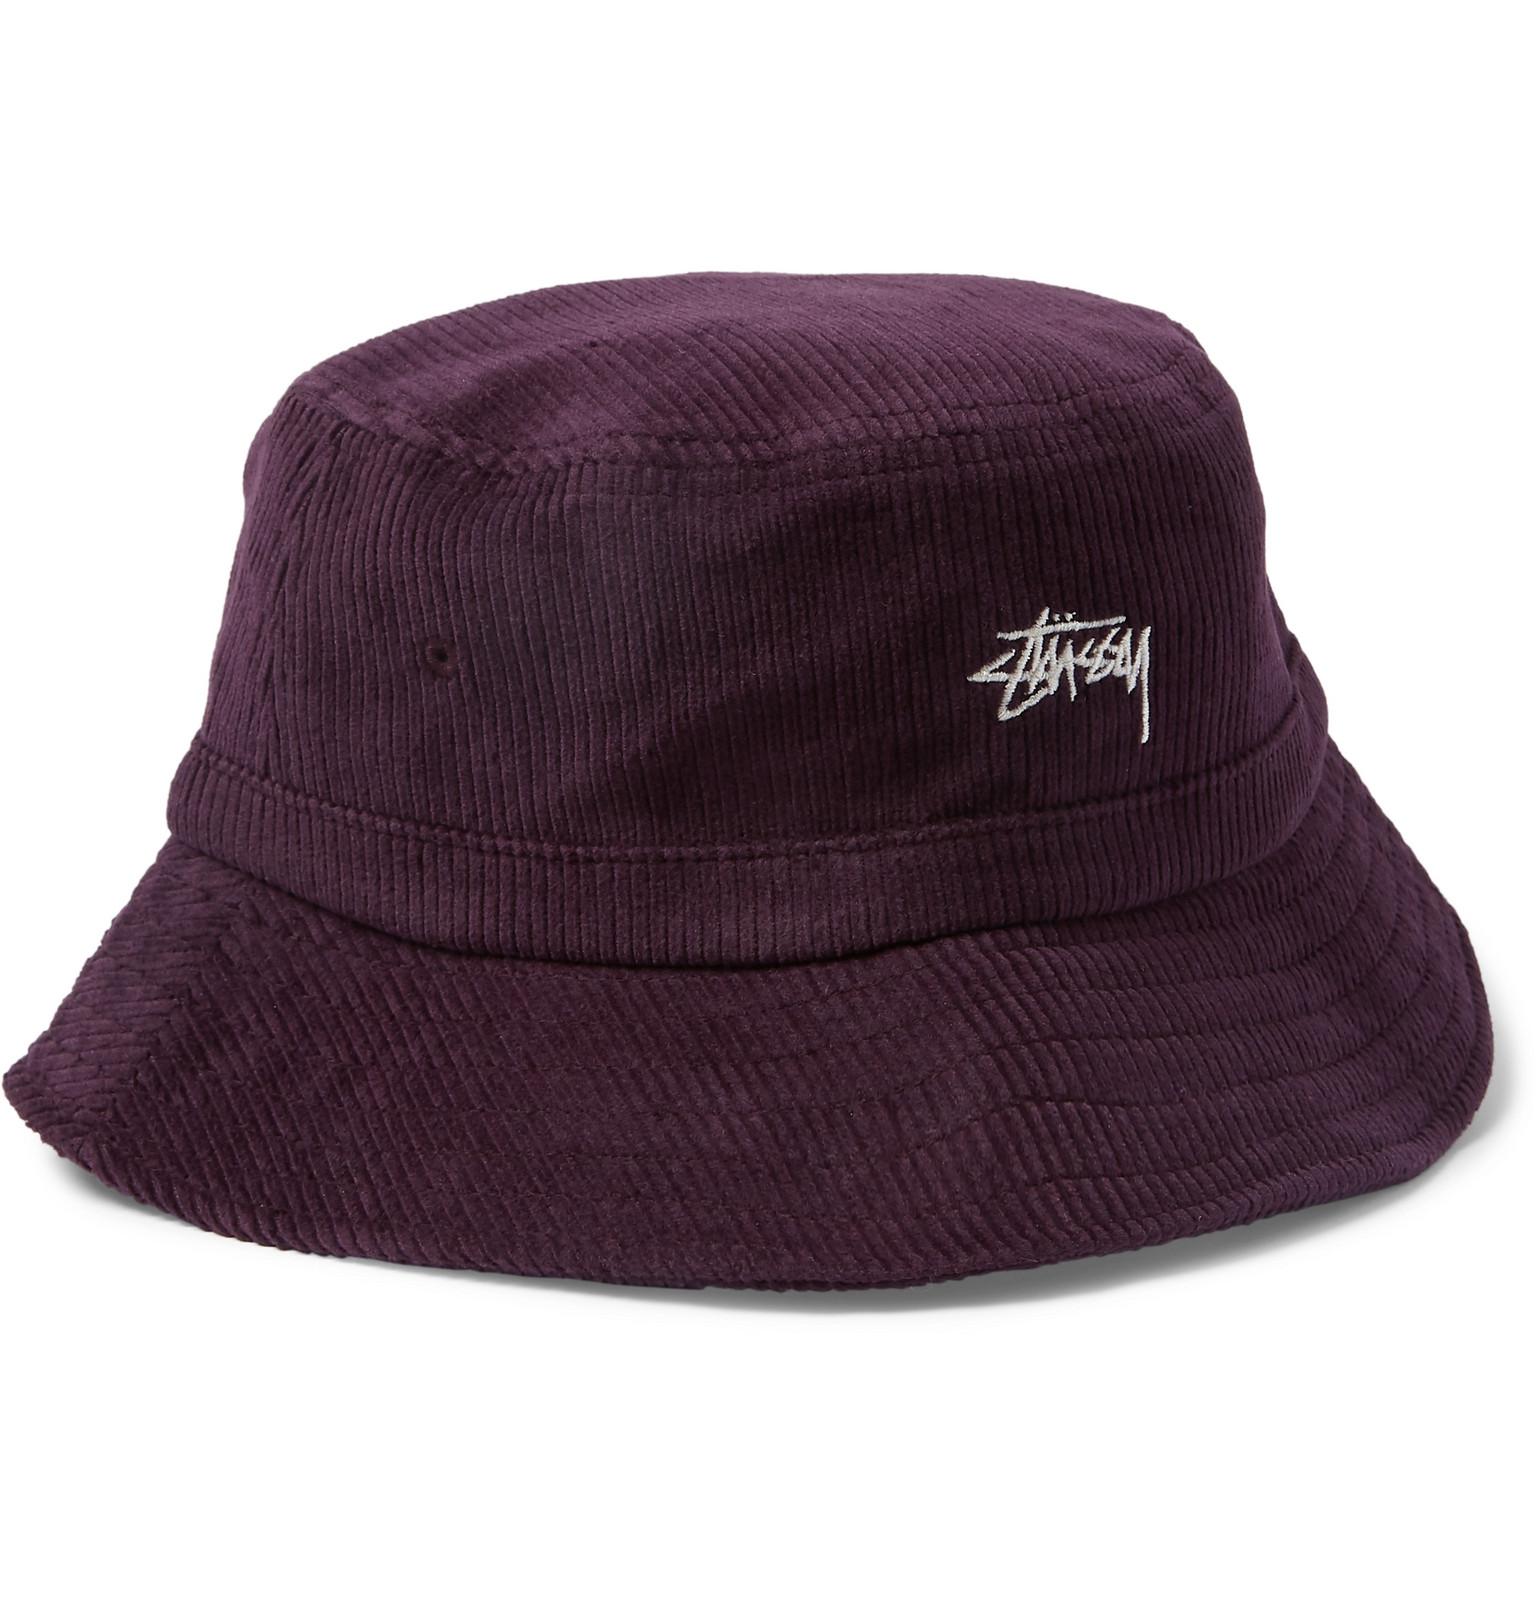 Stussy Corduroy Bucket Hat in Lavender (Purple) for Men - Lyst